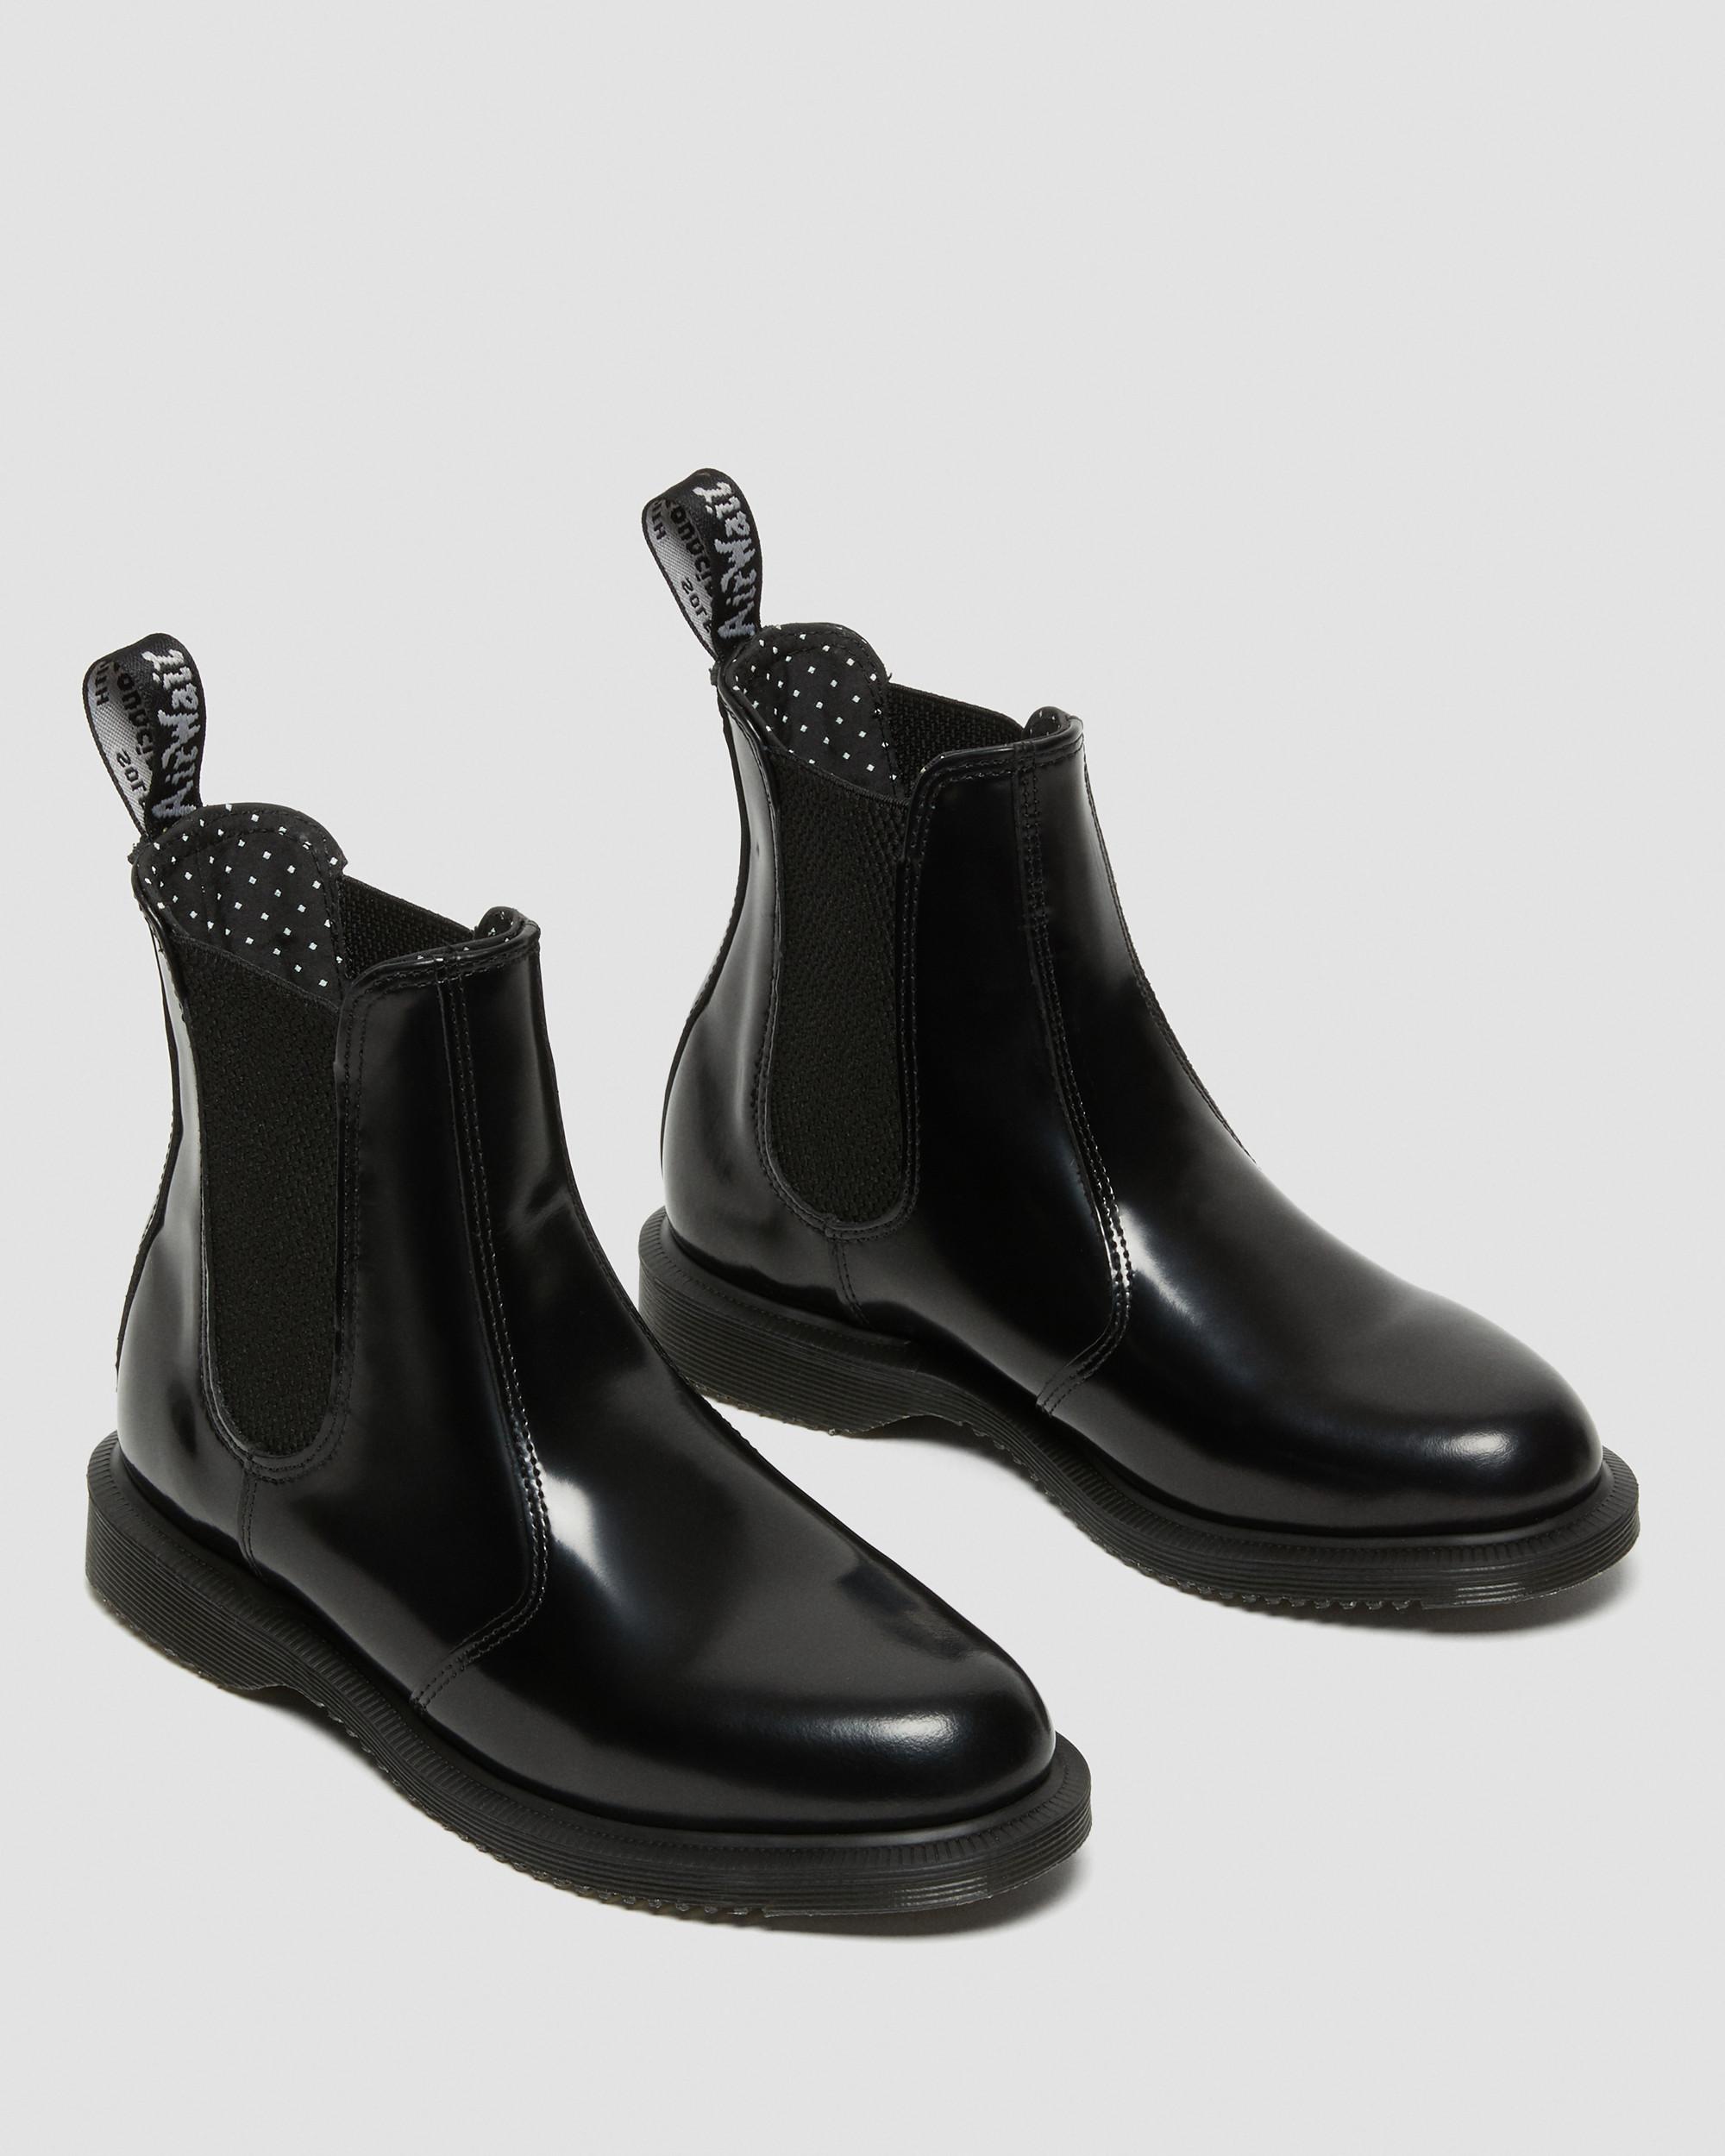 Damen Schuhe Stiefel Mittelhohe Stiefel Dr Martens Chelsea boots flora in Schwarz 